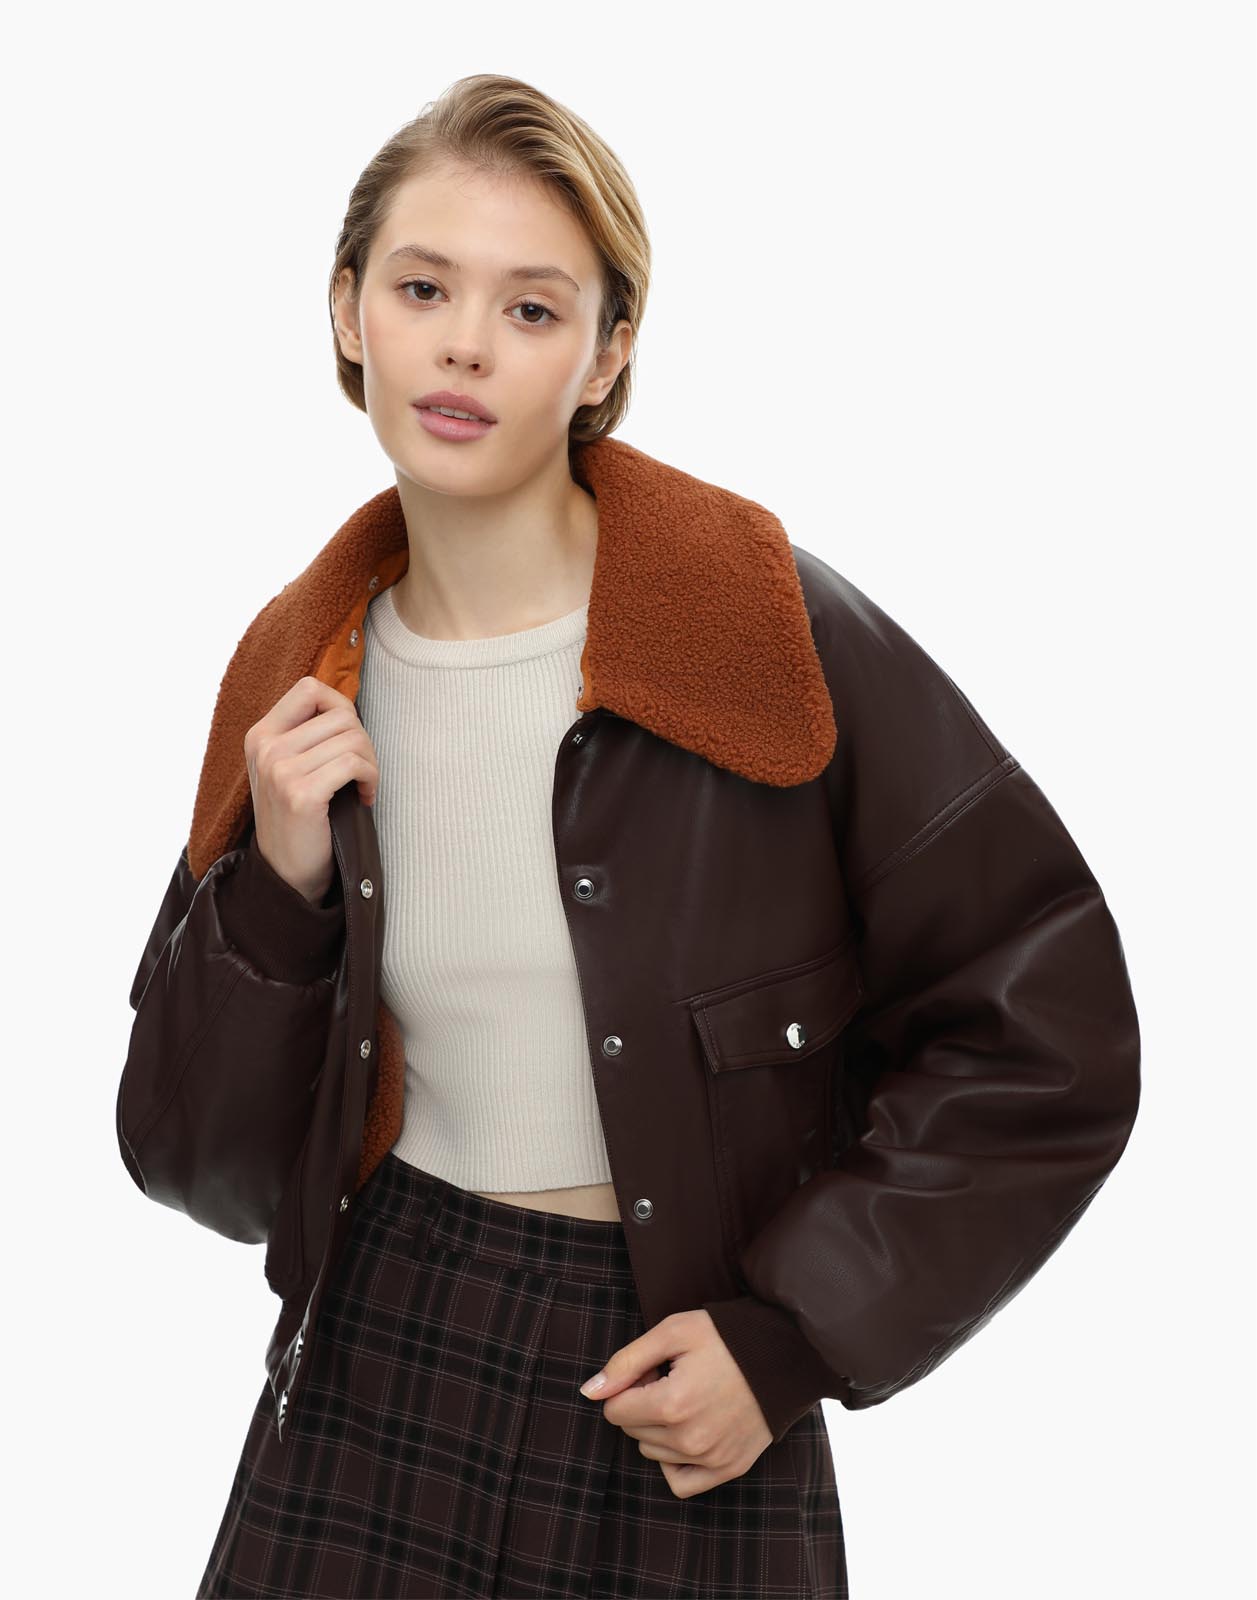 Кожаная куртка женская Gloria Jeans GOW003702 коричневая S (40-42)